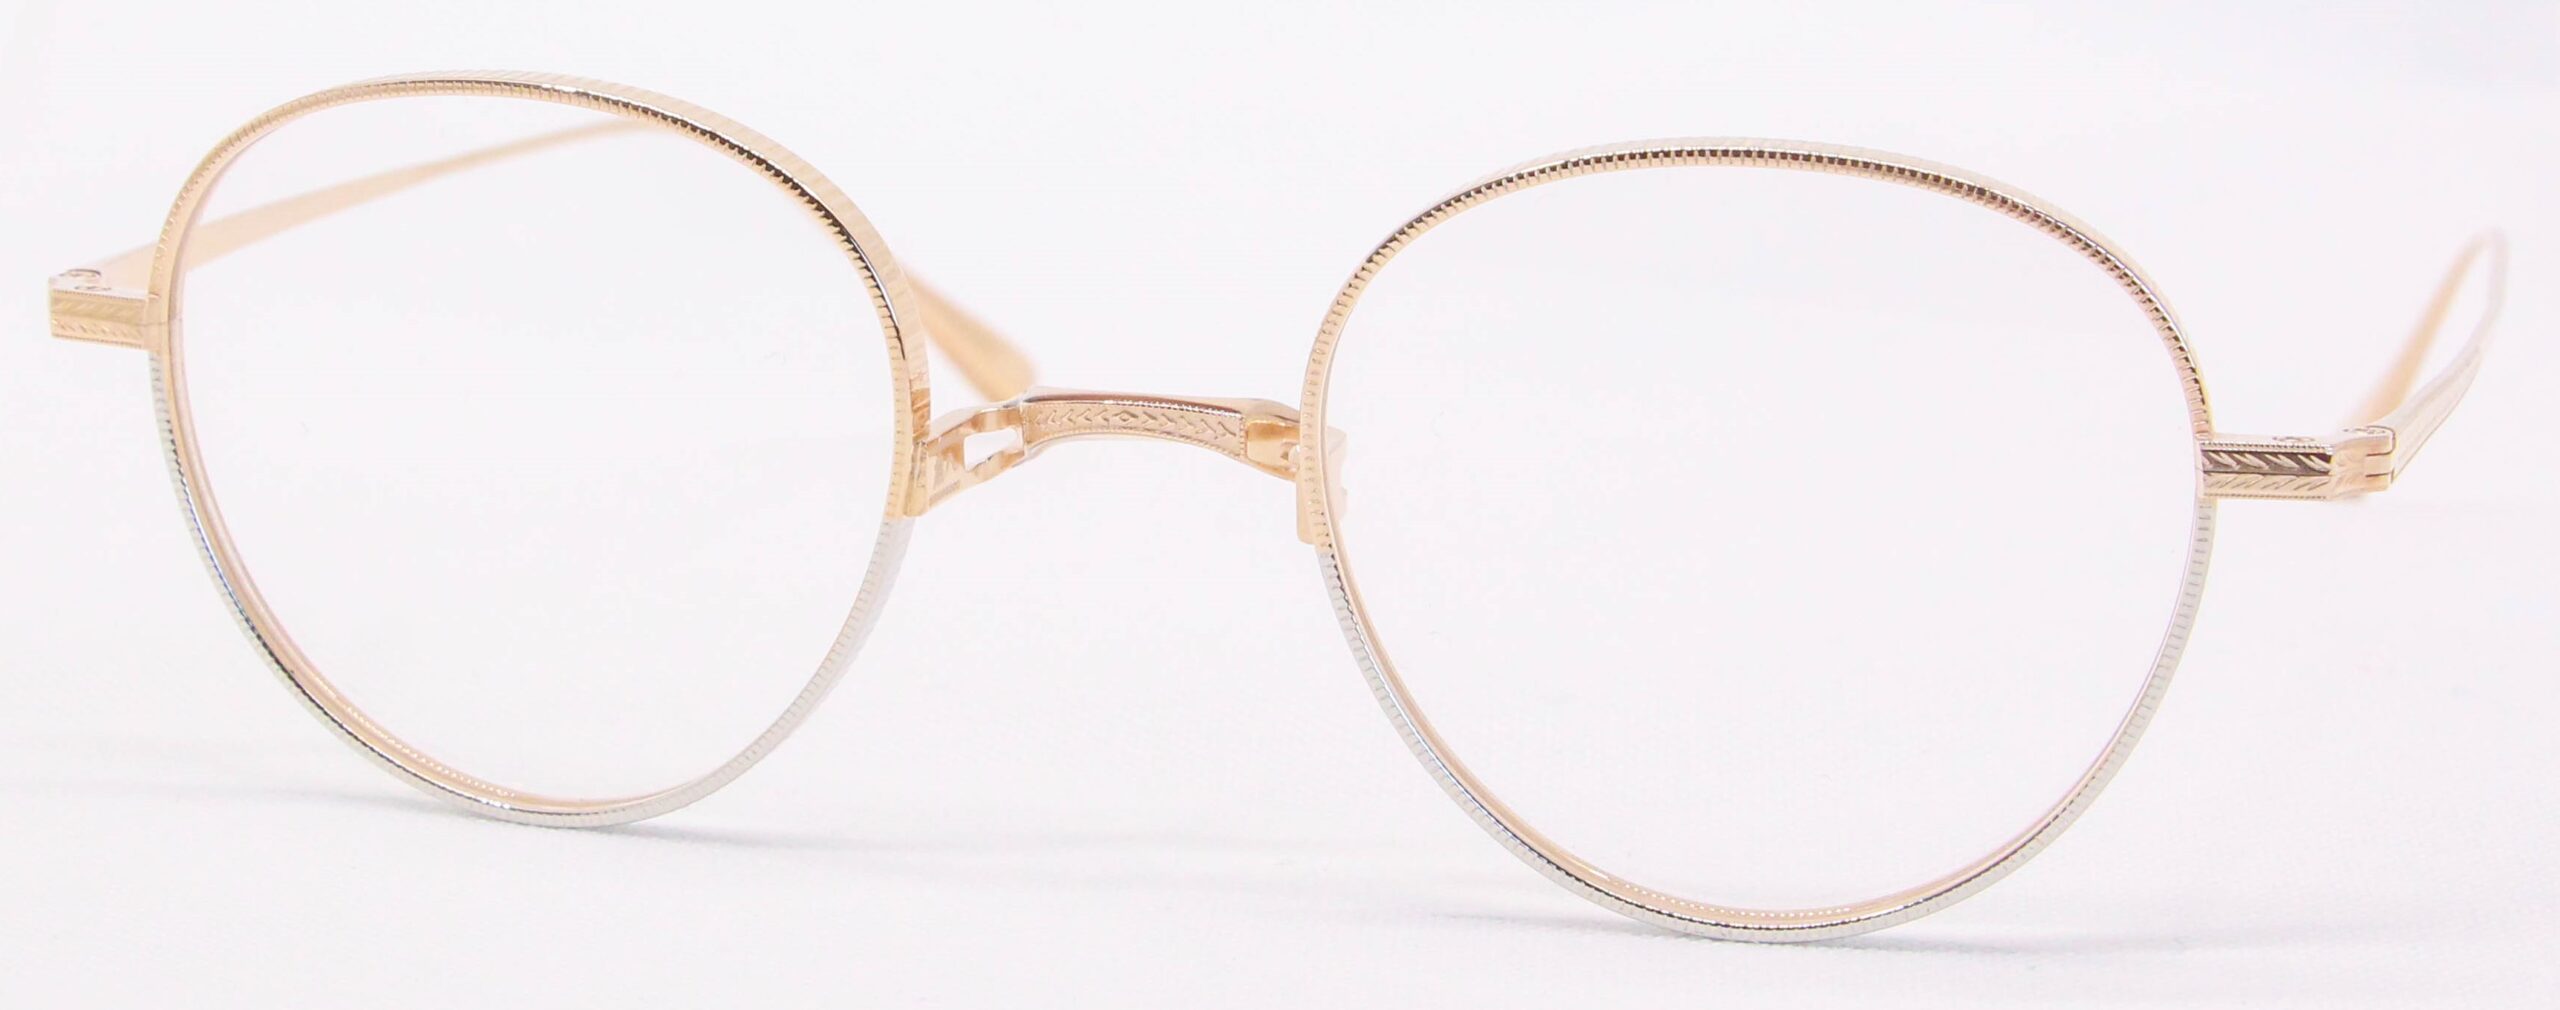 眼鏡のカラータイプC-6 Pink-Gold/Silver